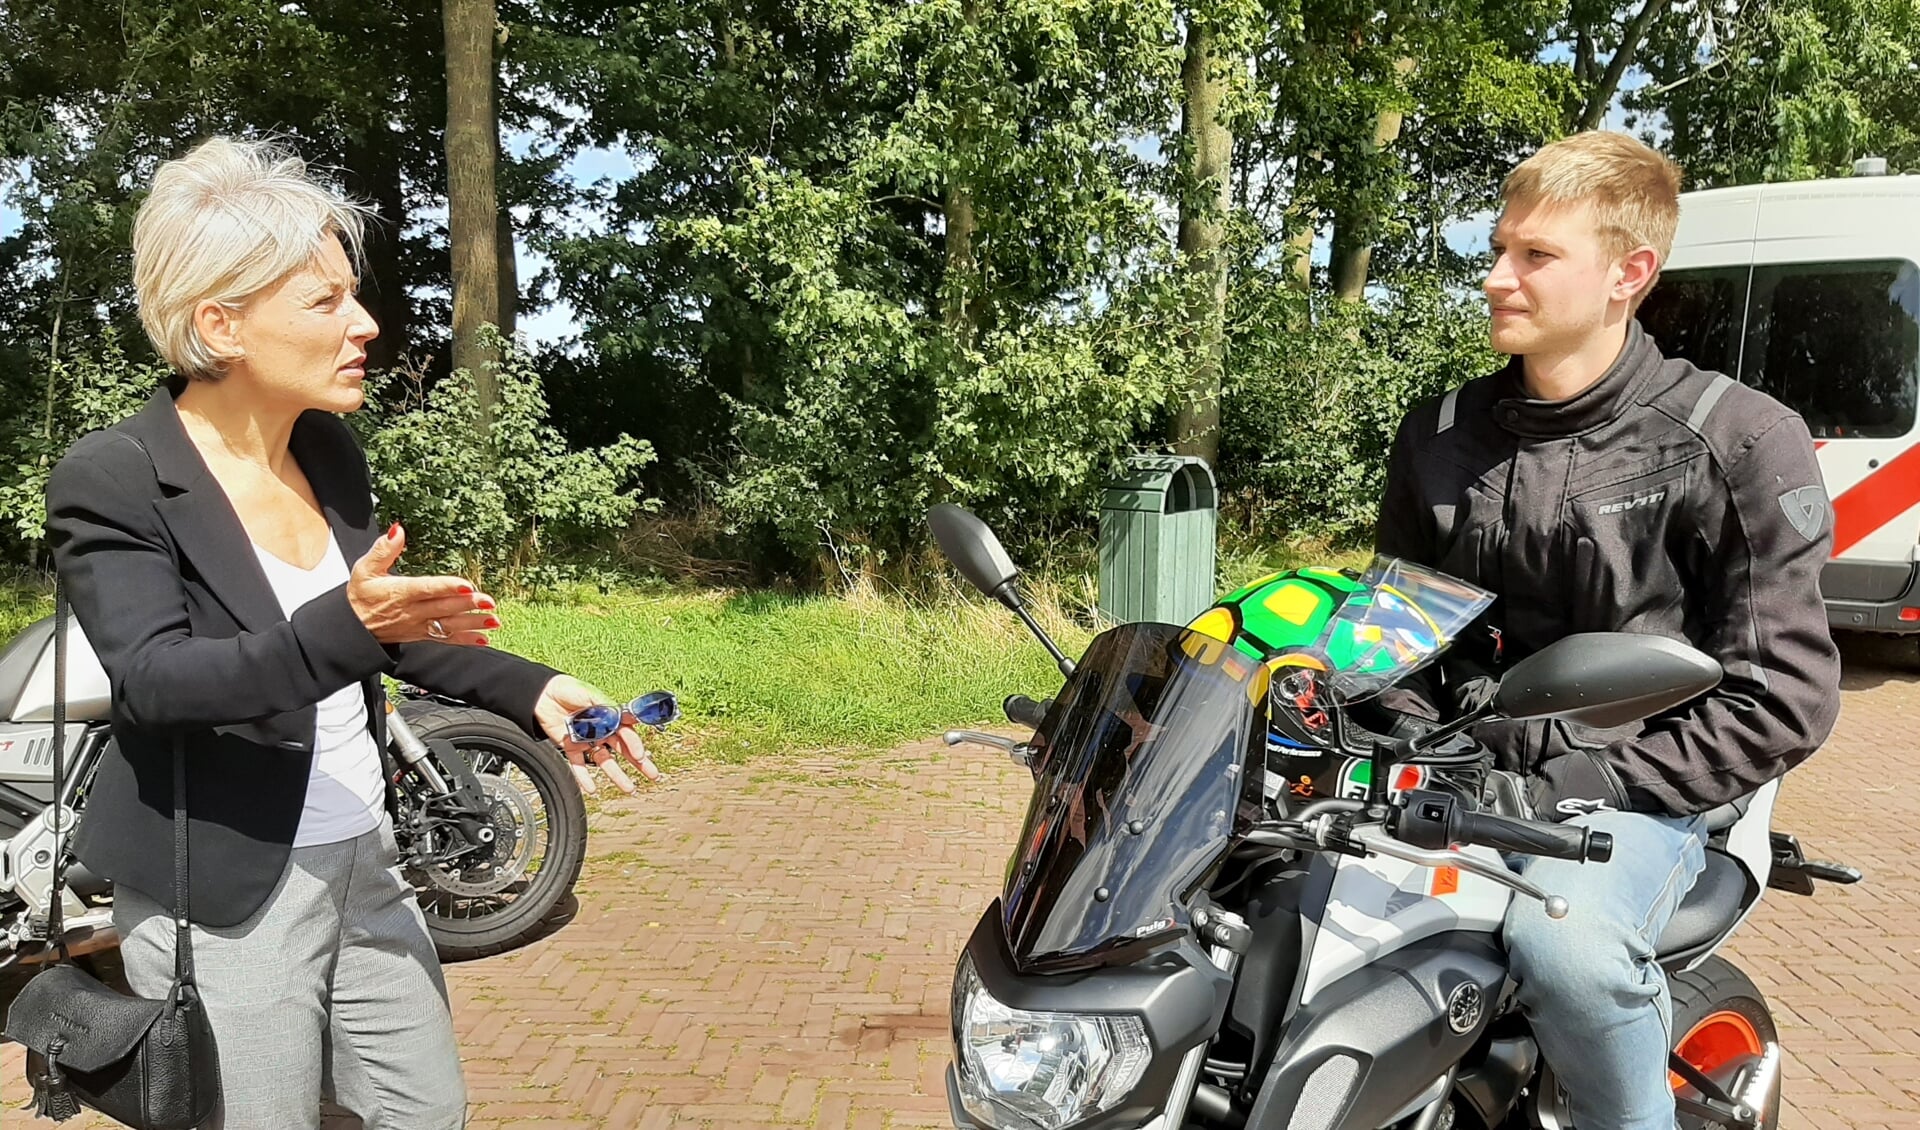 Burgemeester Iris Meerts van Wijk bij Duurstede in gesprek met een motorrijder